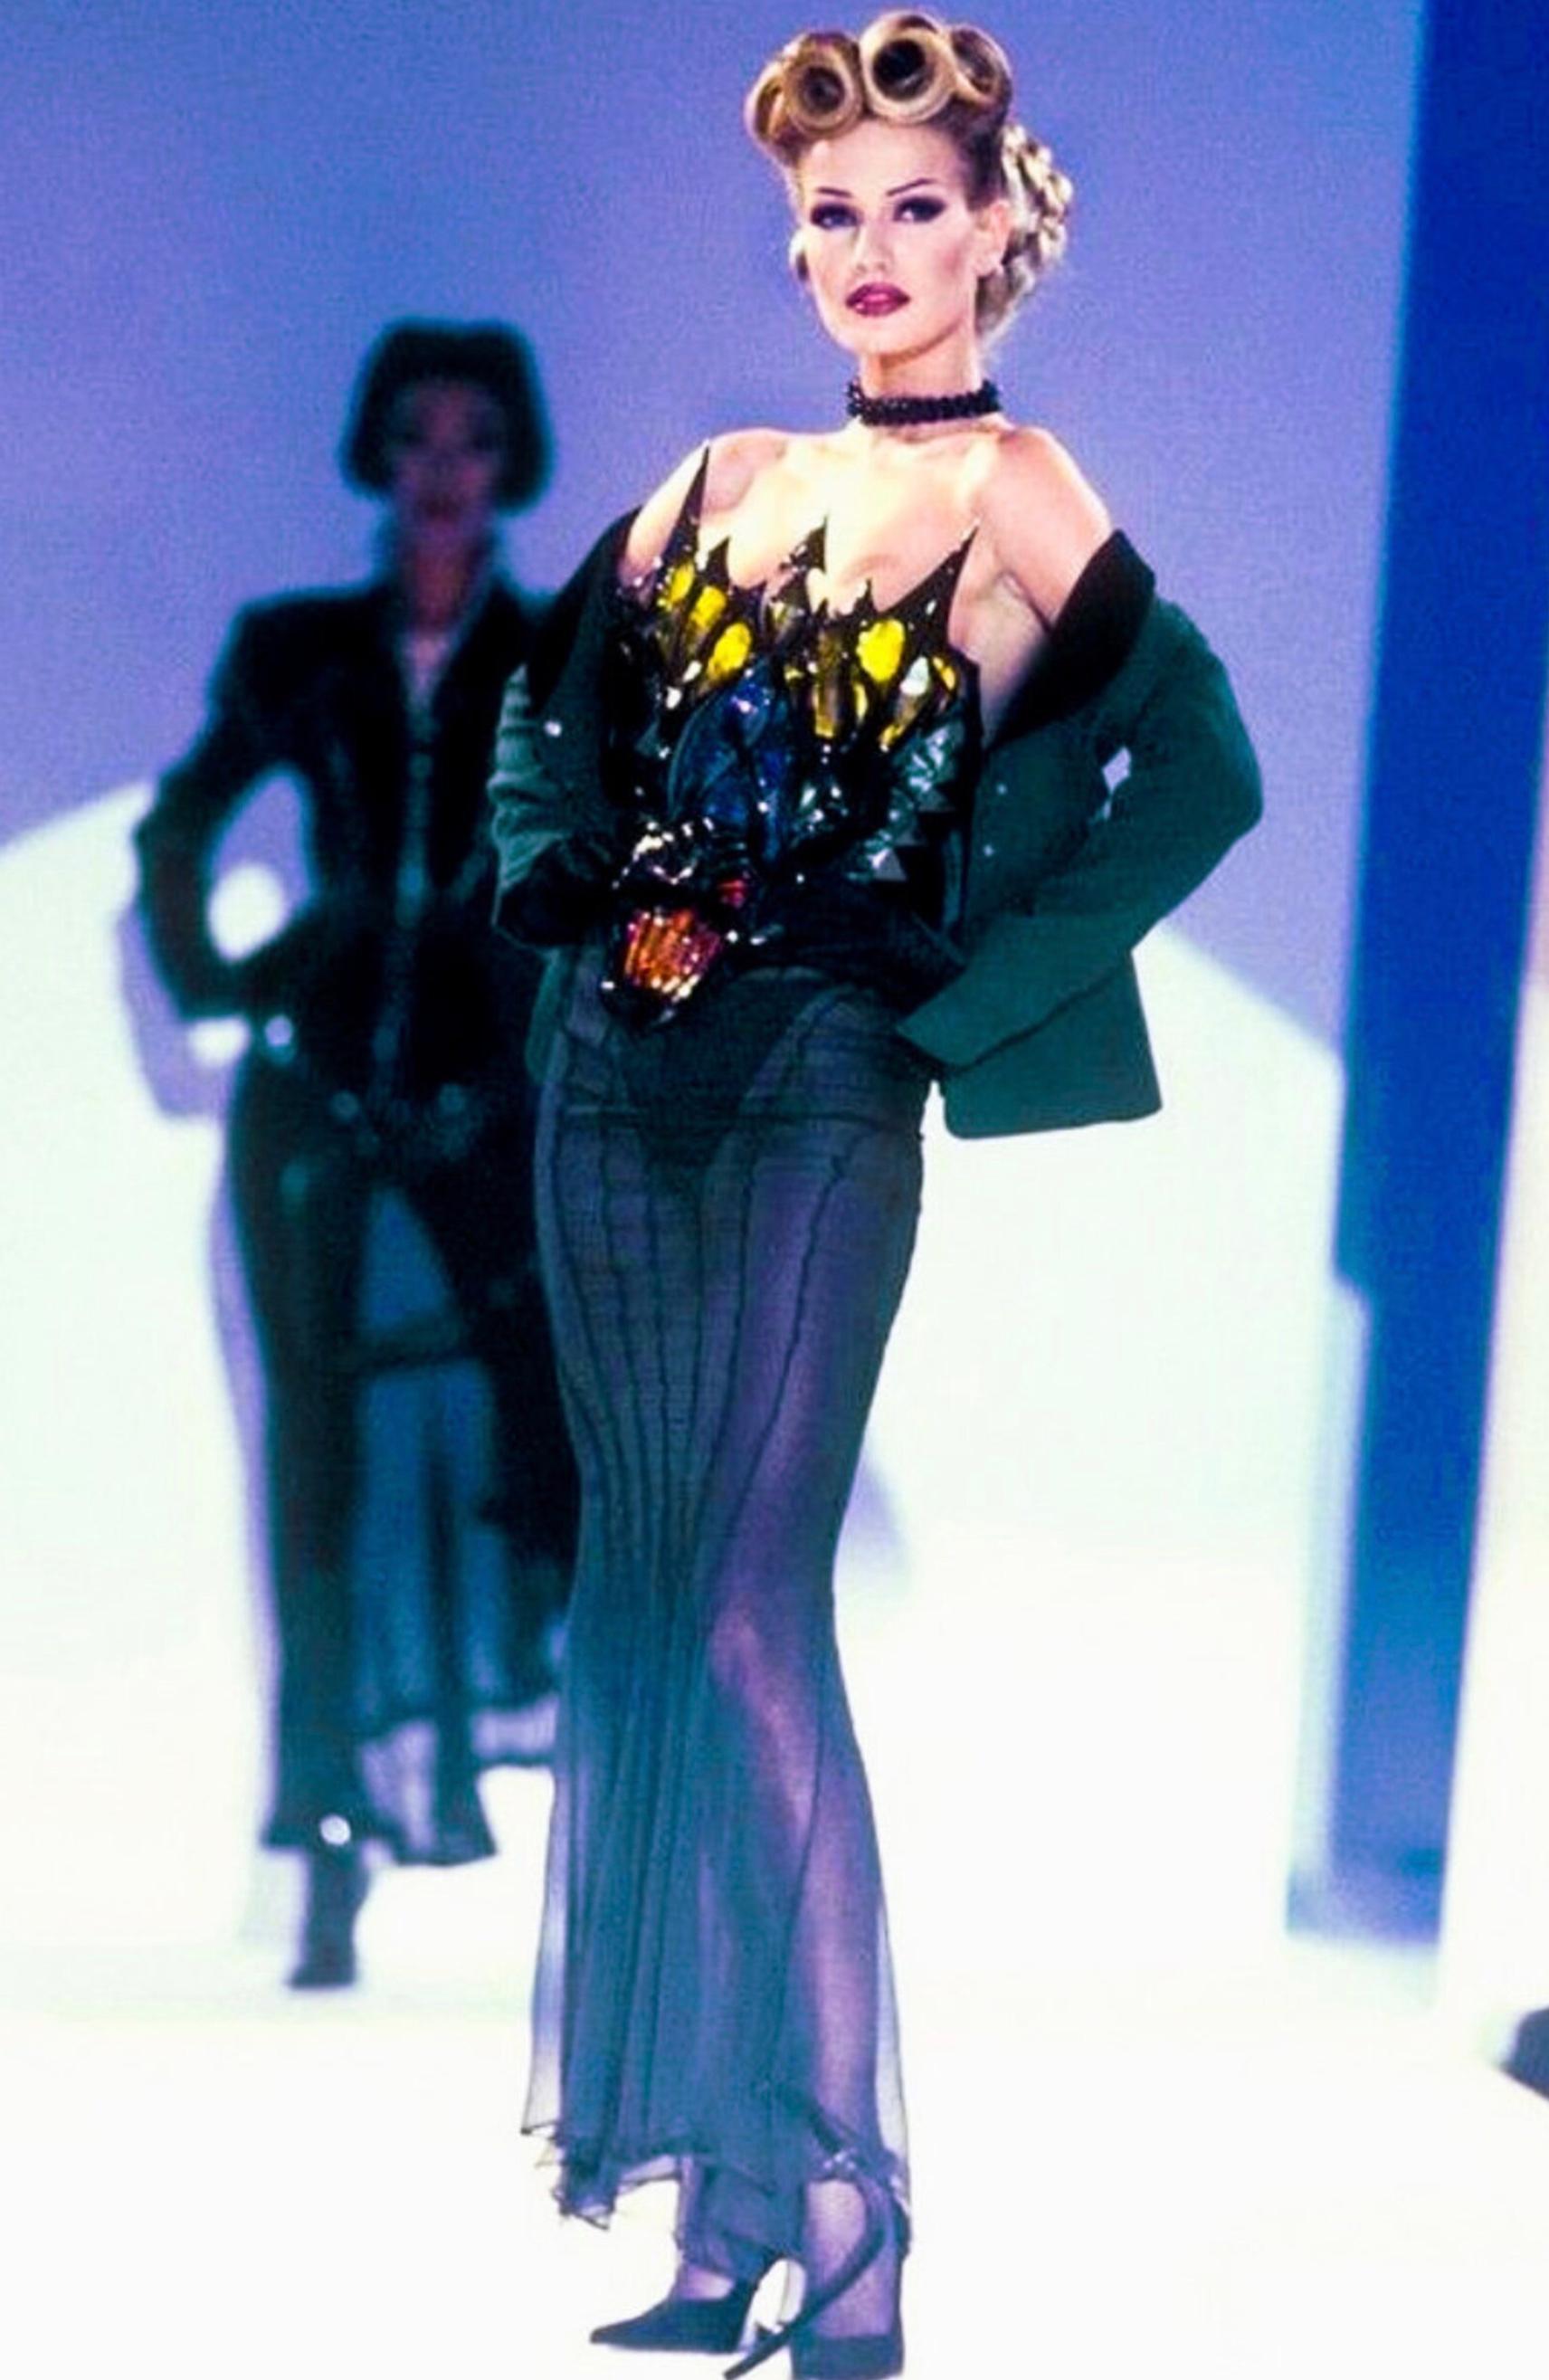 
Erstaunlich seltener Blazer Thierry Mugler FW1992 Collection'S. Getragen auf dem Laufsteg von der hübschen Karen Mulder.
Schöne grüne Wolljacke mit tiefem V-Ausschnitt. Kragen, Taschen und Manschetten aus schwarzem Samt. Typisch muglereske,